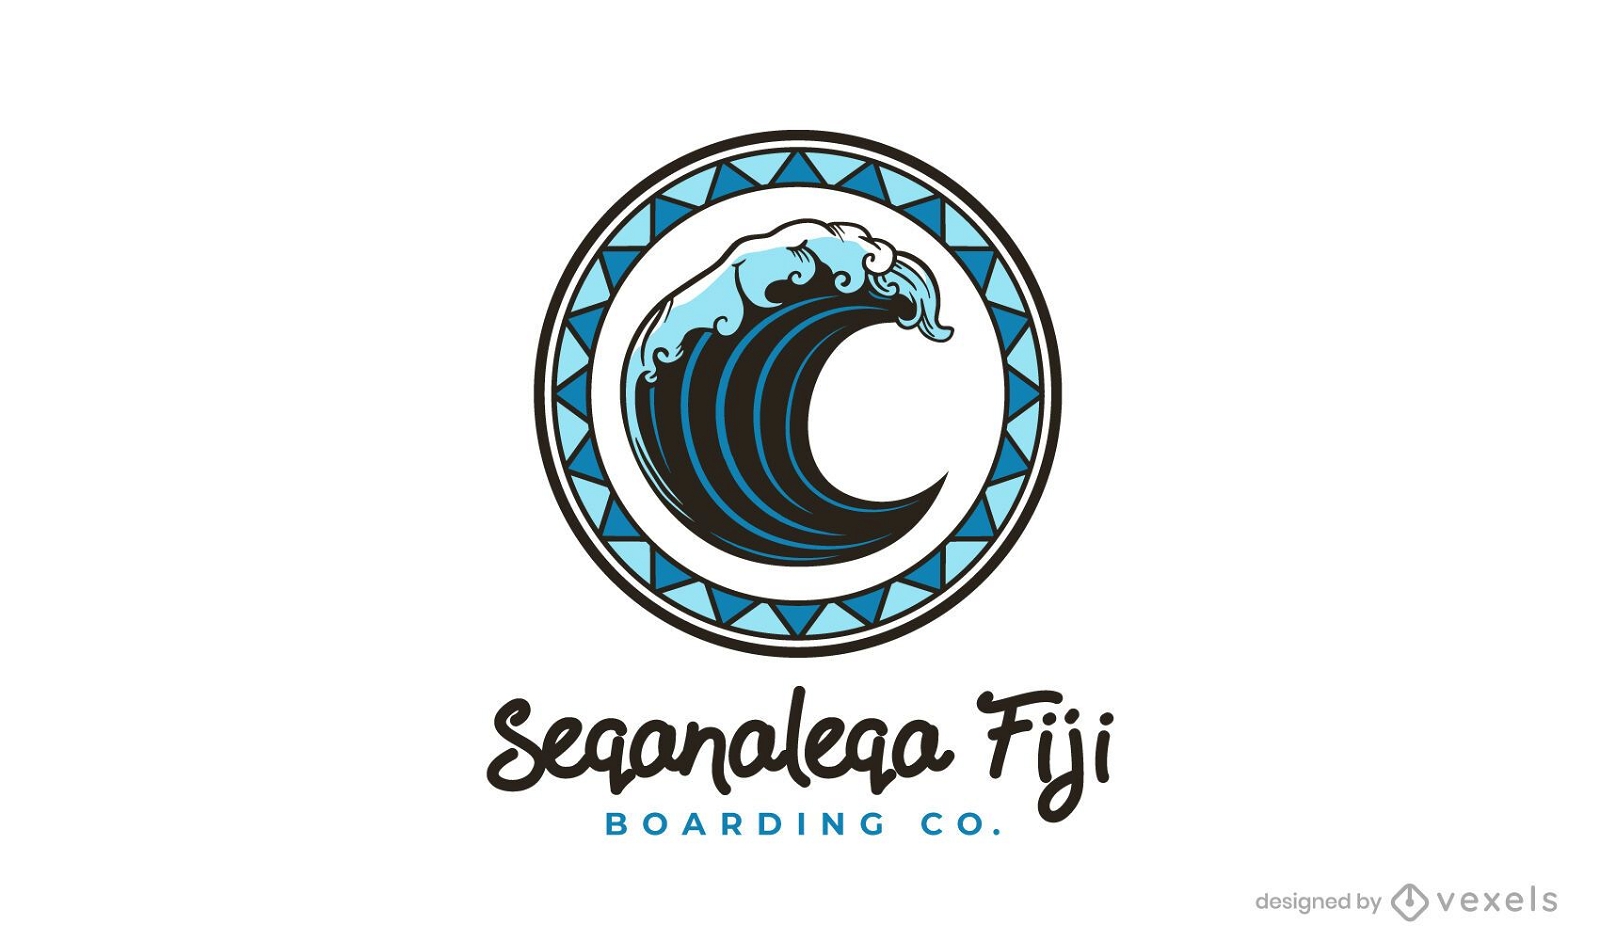 SOLICITAR plantilla de logotipo Seqanaleqa fiji